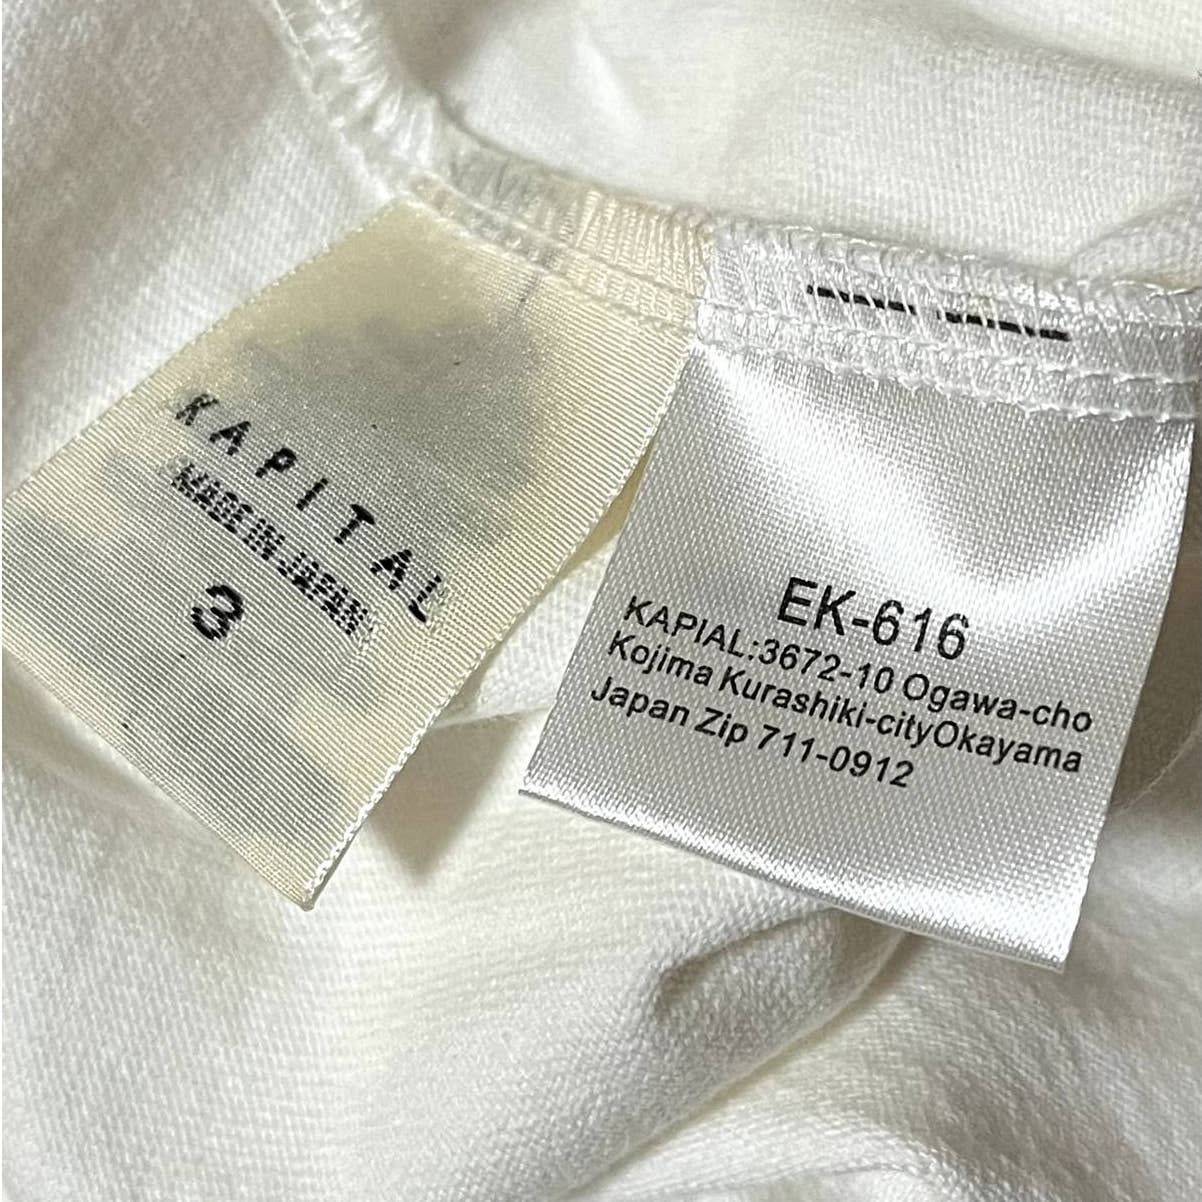 Kapital Cloth Bandana Huge-T 2022